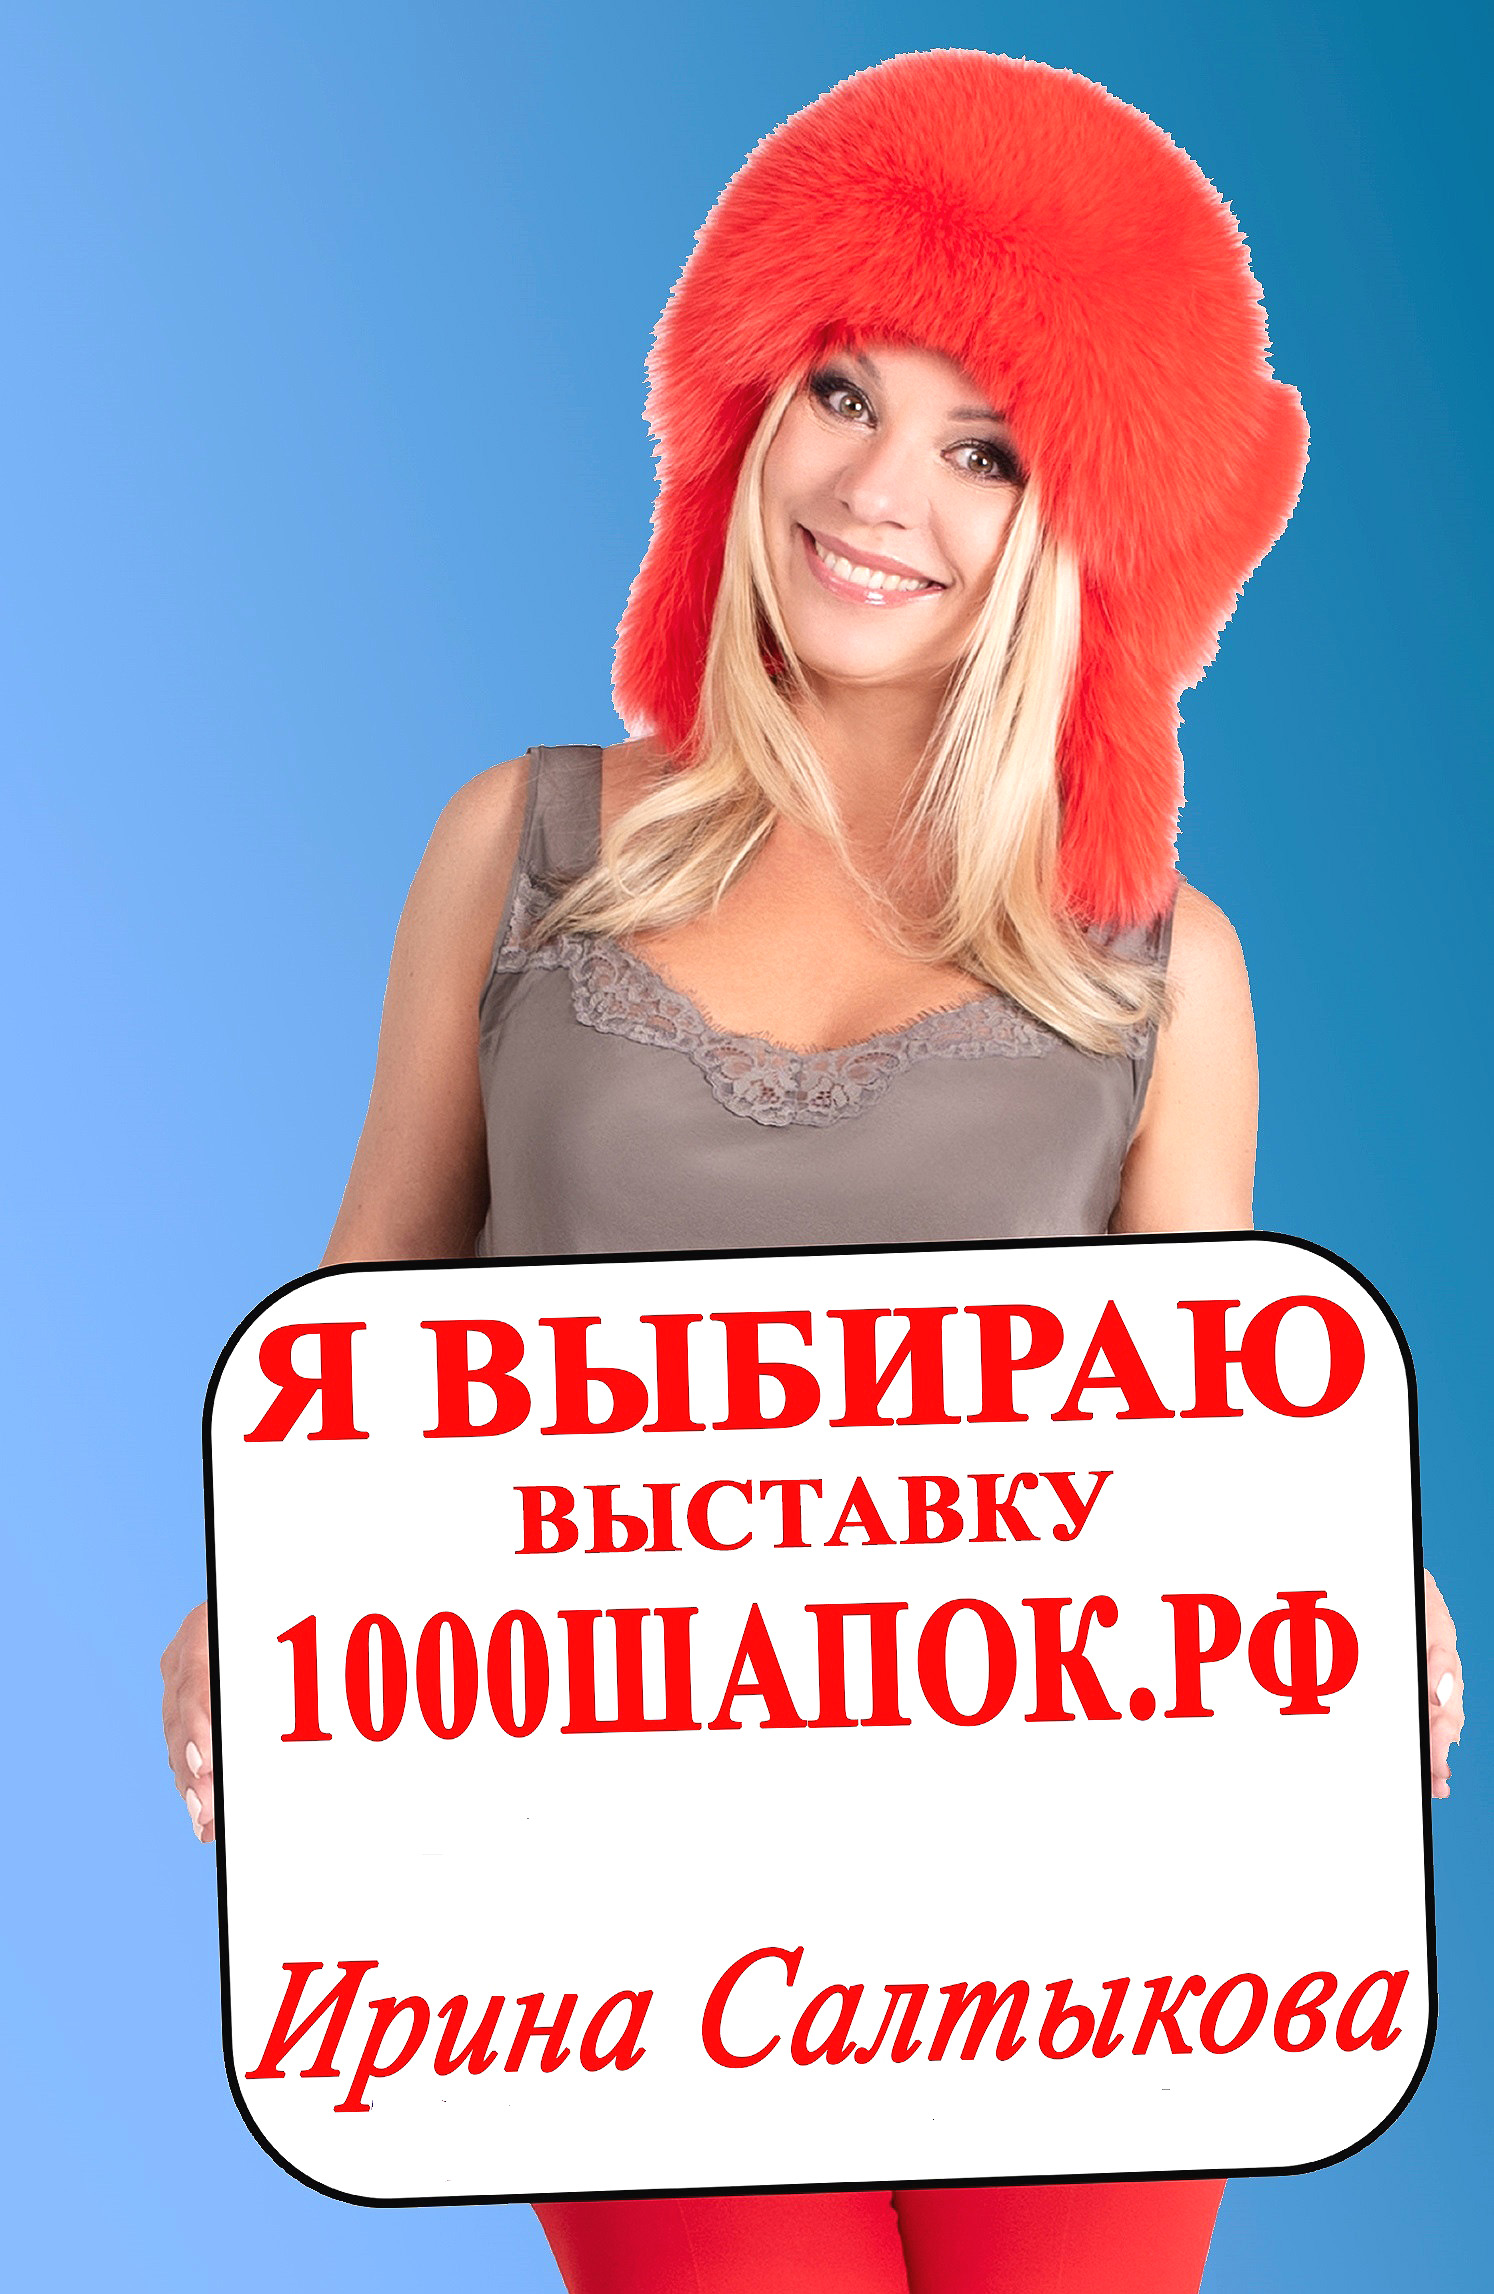 Салтыкова в шапке